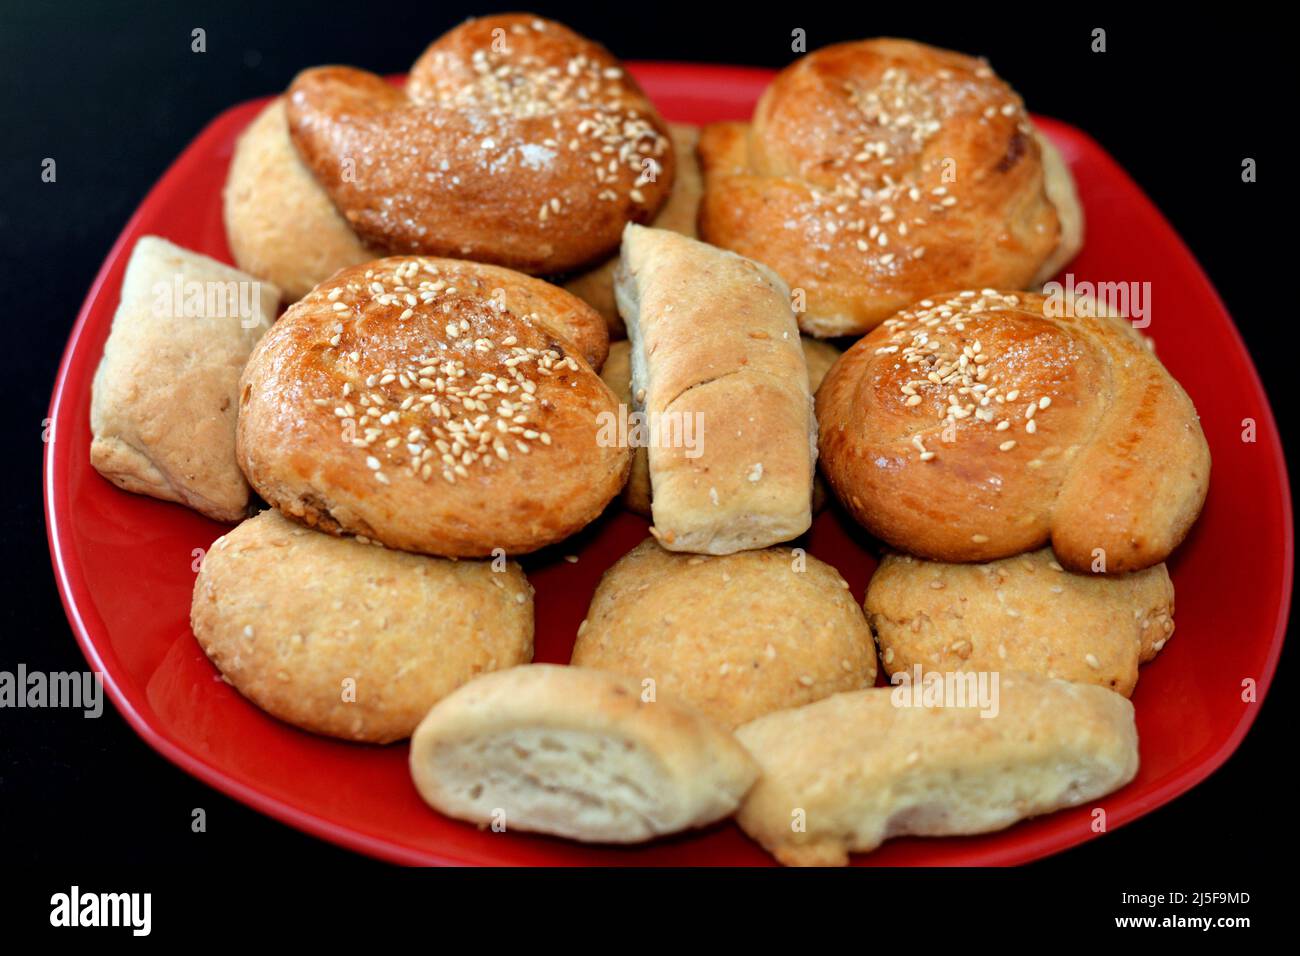 Cuisine orientale arabe égyptienne de biscuits remplis de pâte de dattes et de biscuits couverts de sésame et de sucre, fête de Maamoul Eid El Fitr, Suède de Ramadan Banque D'Images